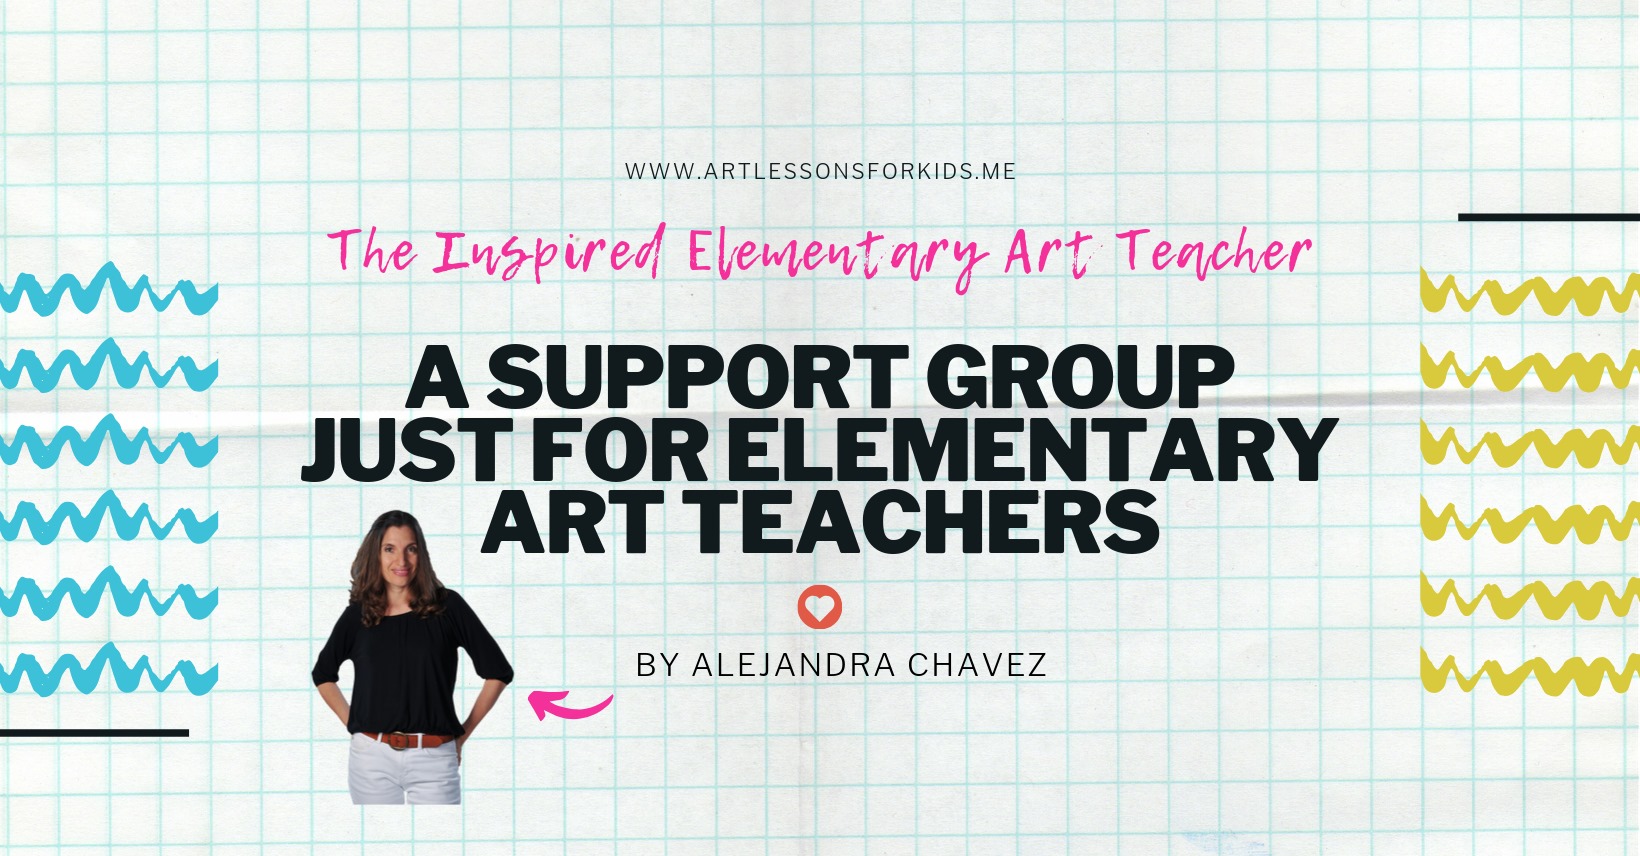 The Inspired Elementary Art Teacher Group